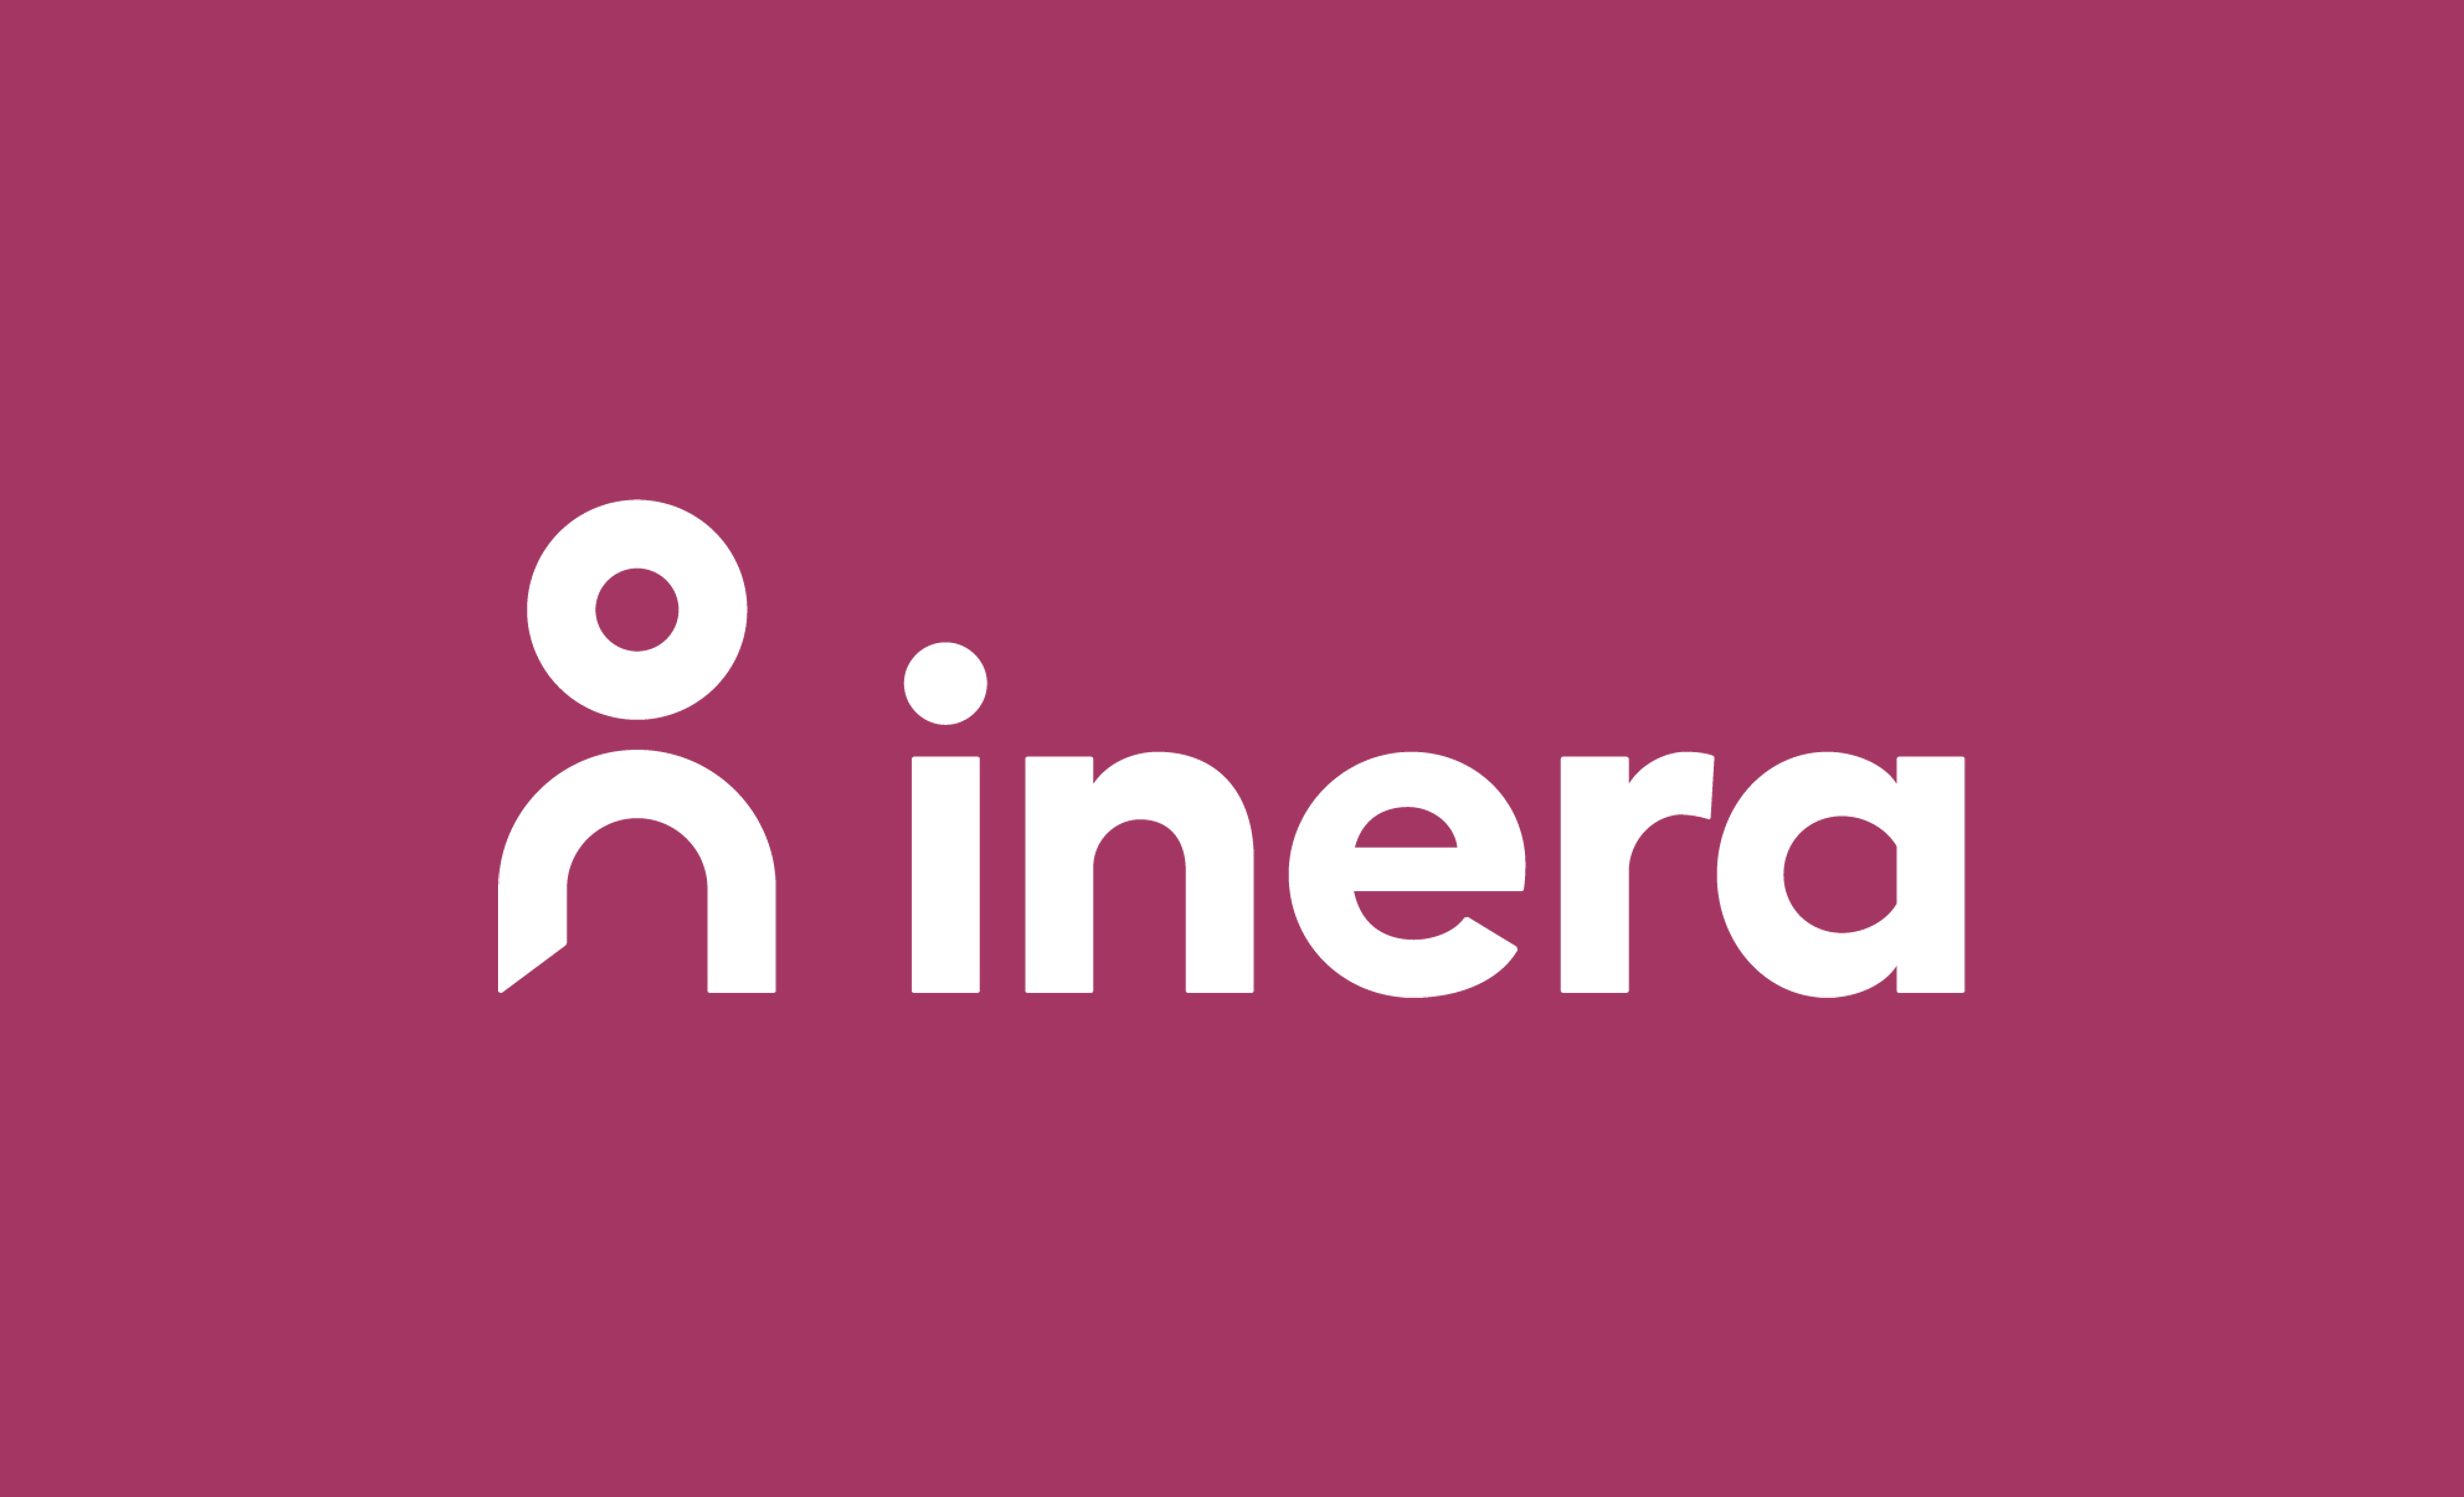 Ineras logotyp i negativt utförande mot Ineras primärfärg.